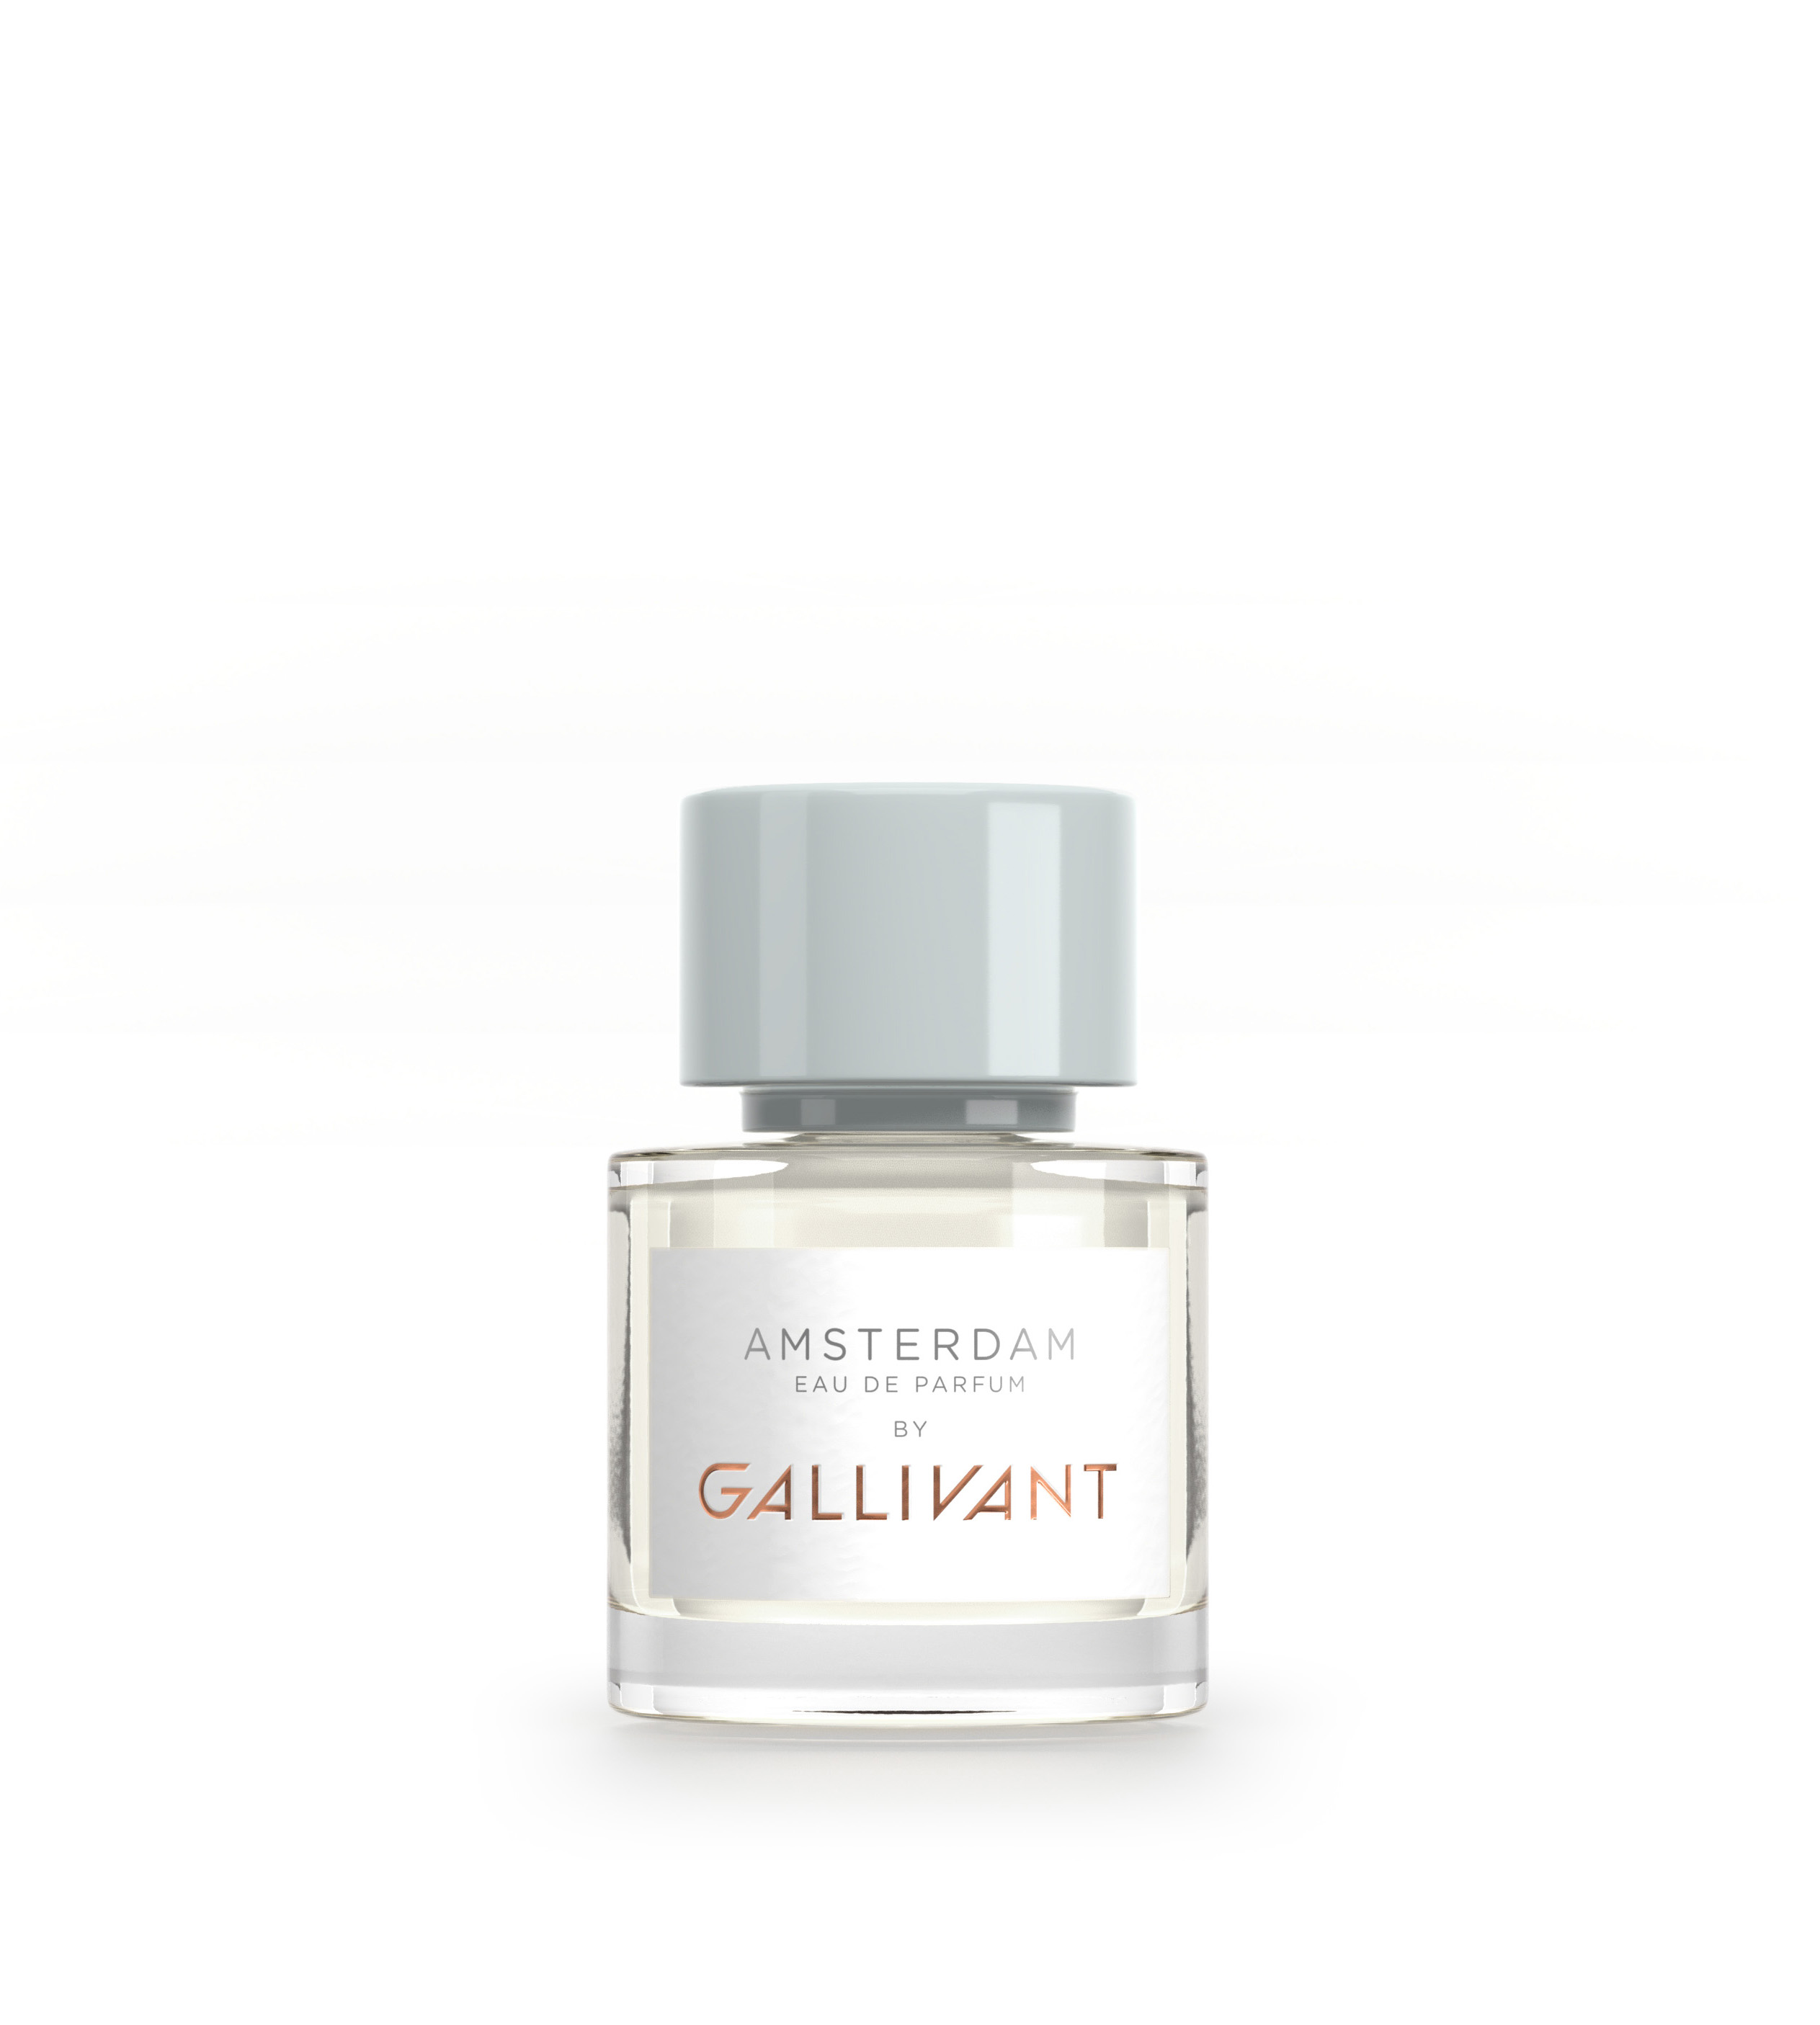 Amsterdam Eau de Parfum 30ml Bottle by Gallivant